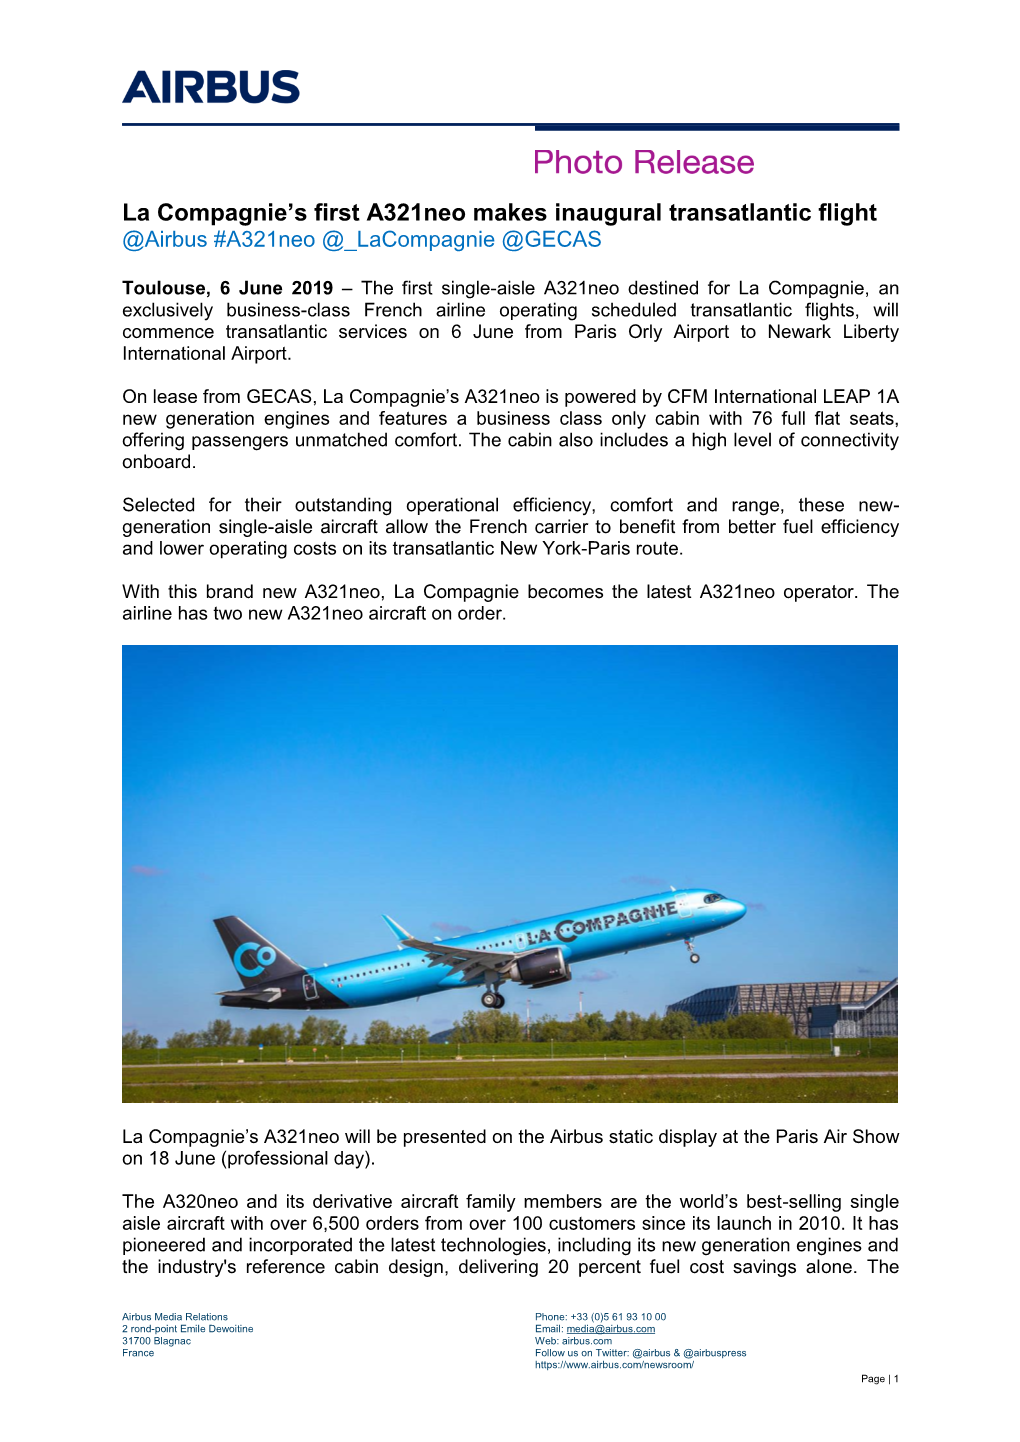 La Compagnie's First A321neo Makes Inaugural Transatlantic Flight